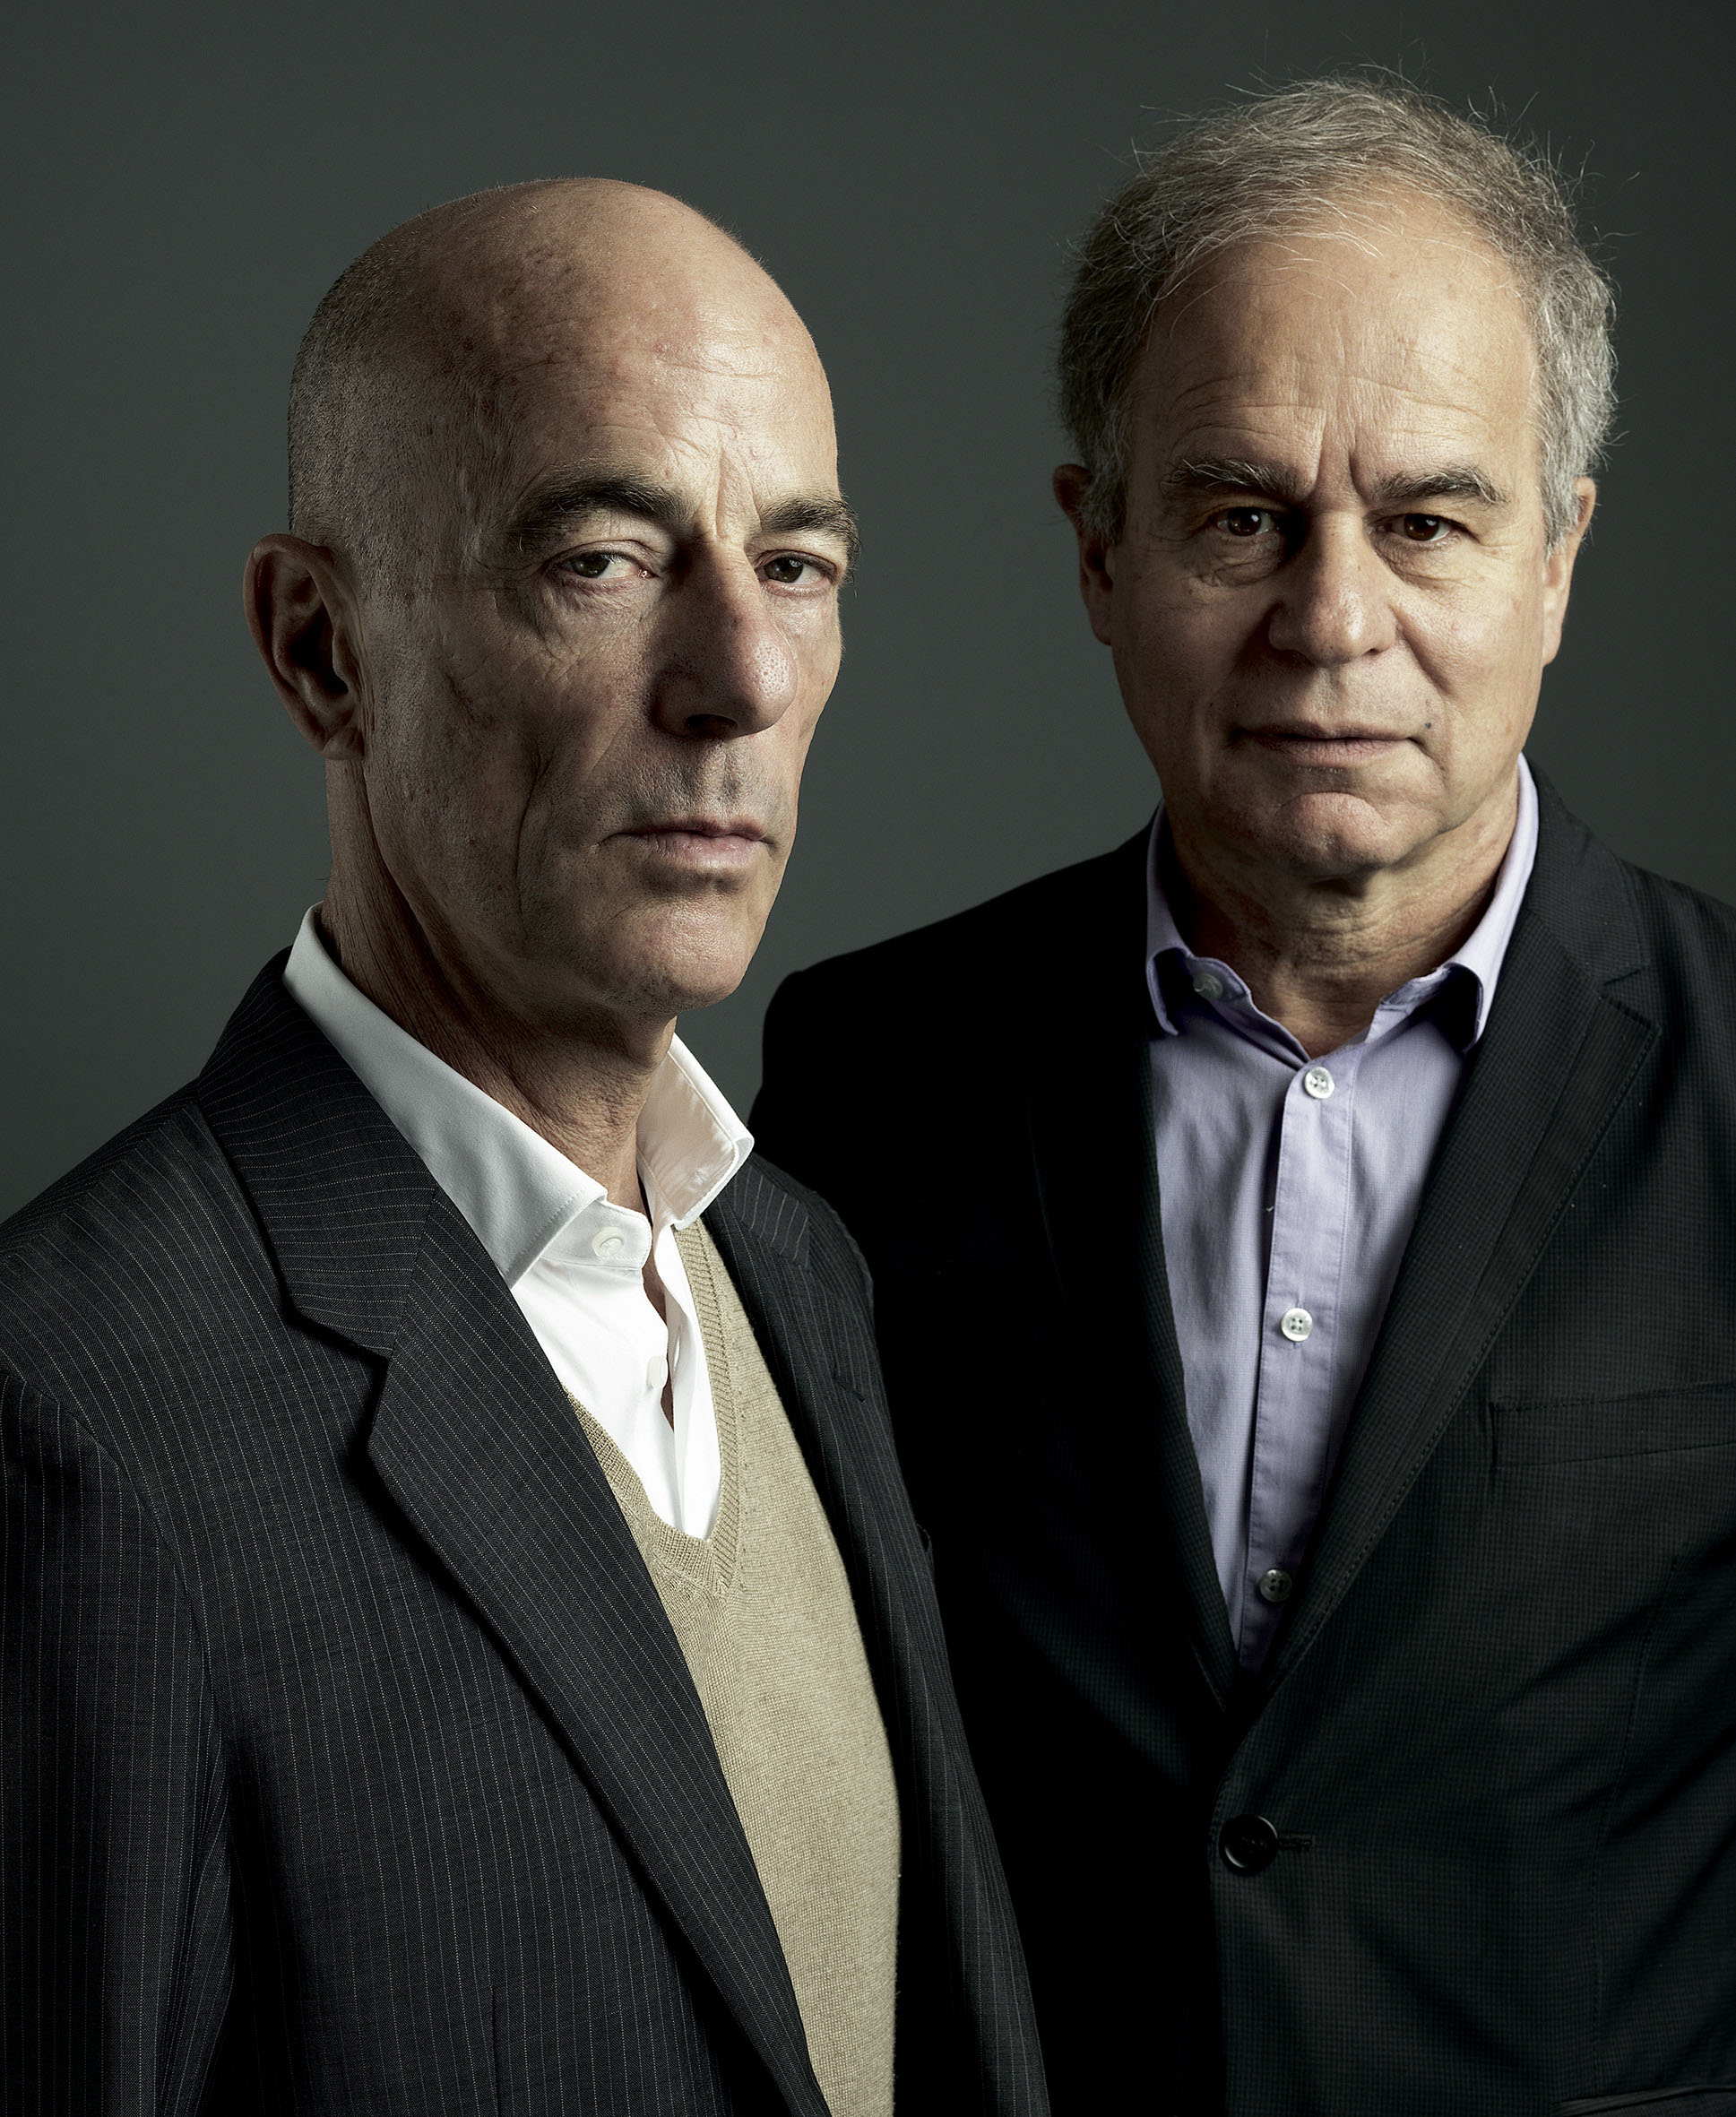 Jacques Herzog (left) and Pierre de Meuron. Herzog & de Meuron. © 2011, Marco Grob